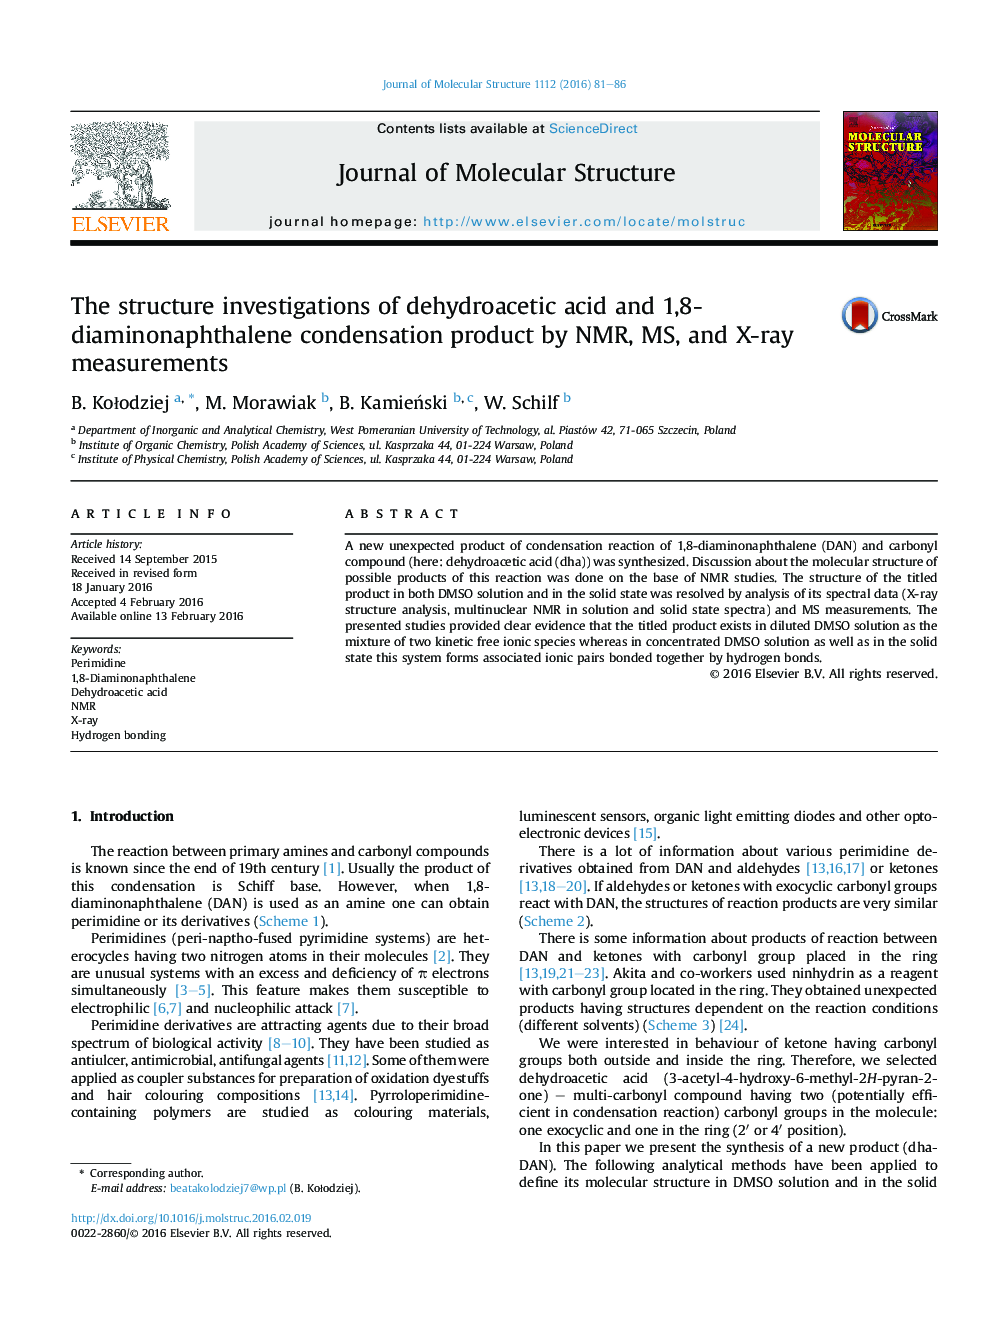 تحقیقات ساختار دهیدرواستیک اسید و محصول چگالش 1،8-diaminonaphthalene توسط NMR، MS، و اندازه گیری اشعه ایکس 